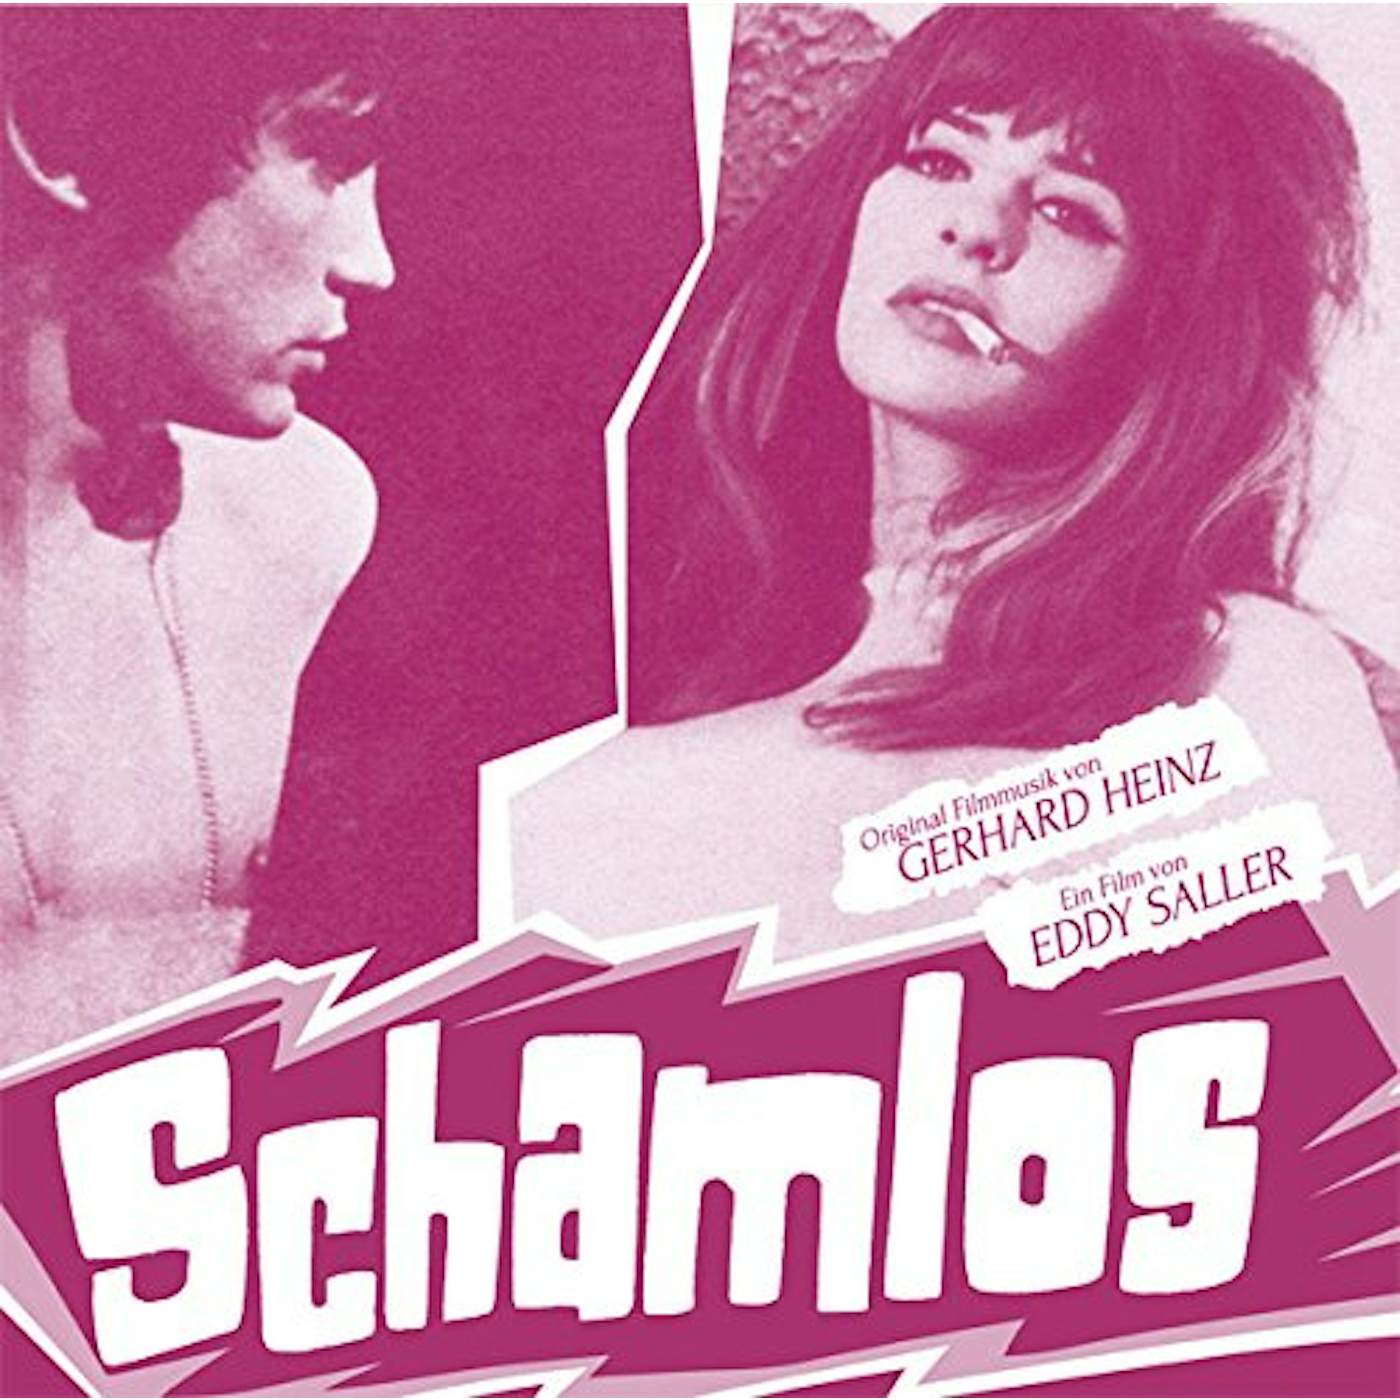 Gerhard Heinz Schamlos Vinyl Record